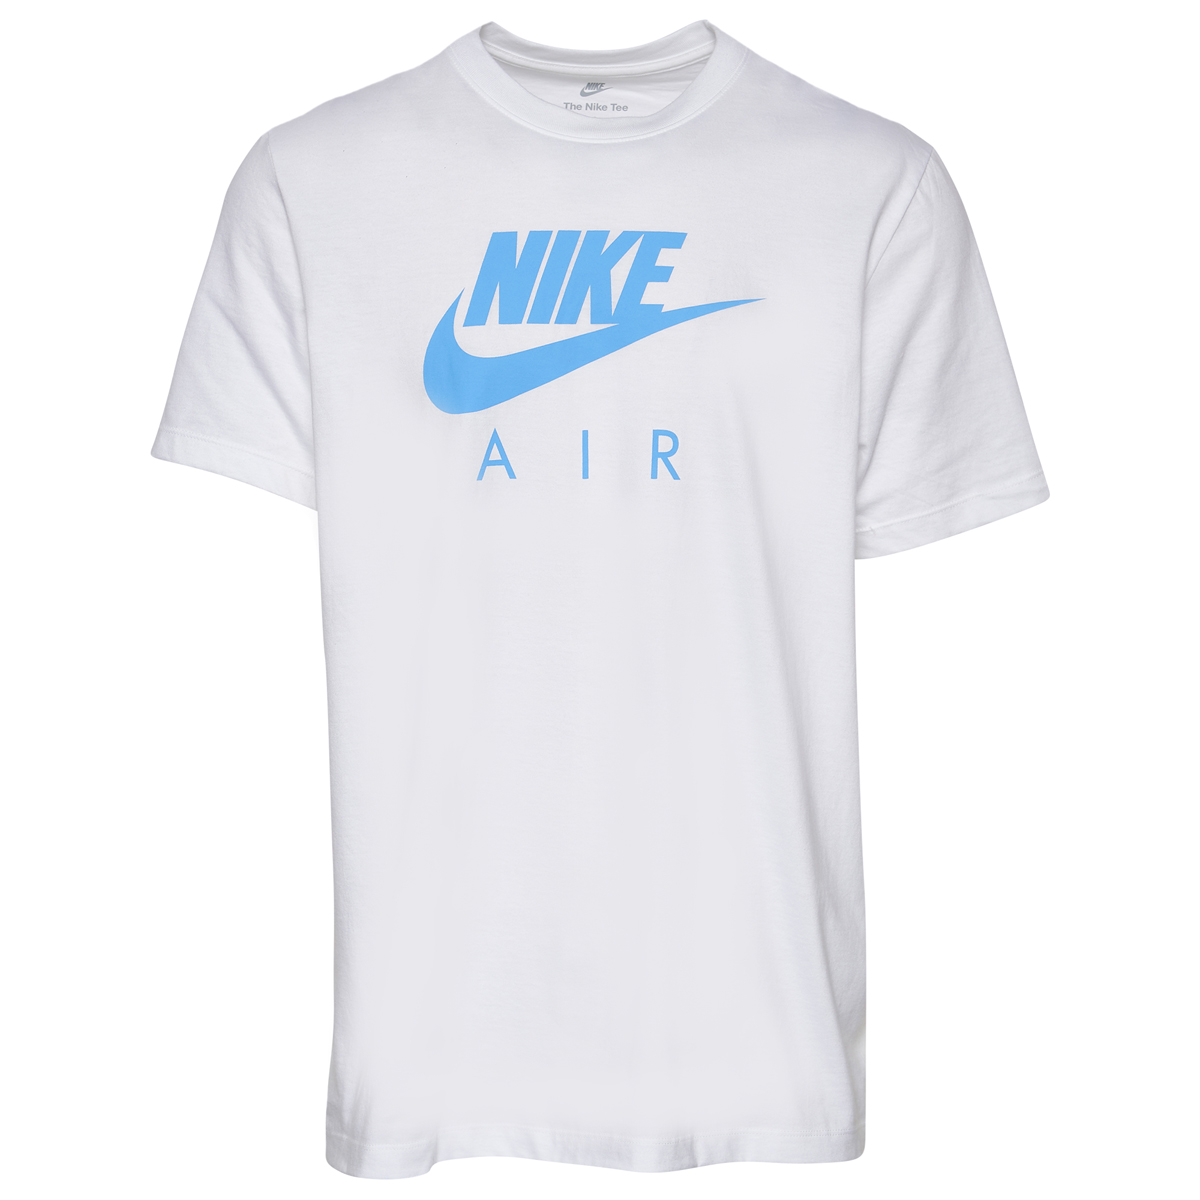 Nike Air T Shirt White Carolina Blue